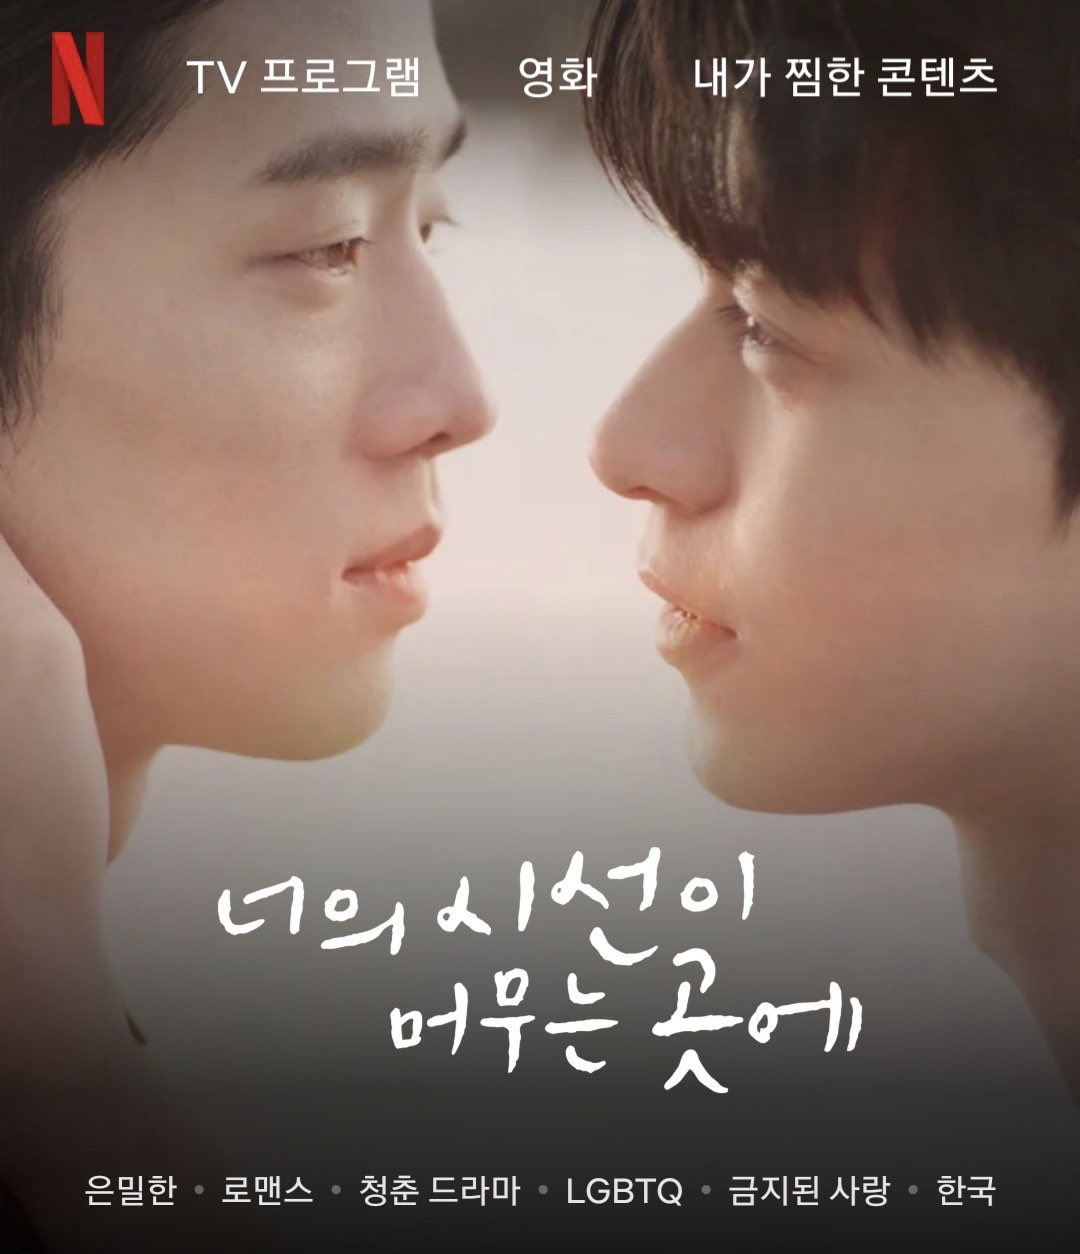 Phim đam mỹ Hàn Quốc: Nơi ánh nhìn anh tạm dừng - Where Your Eyes Linger (2020)